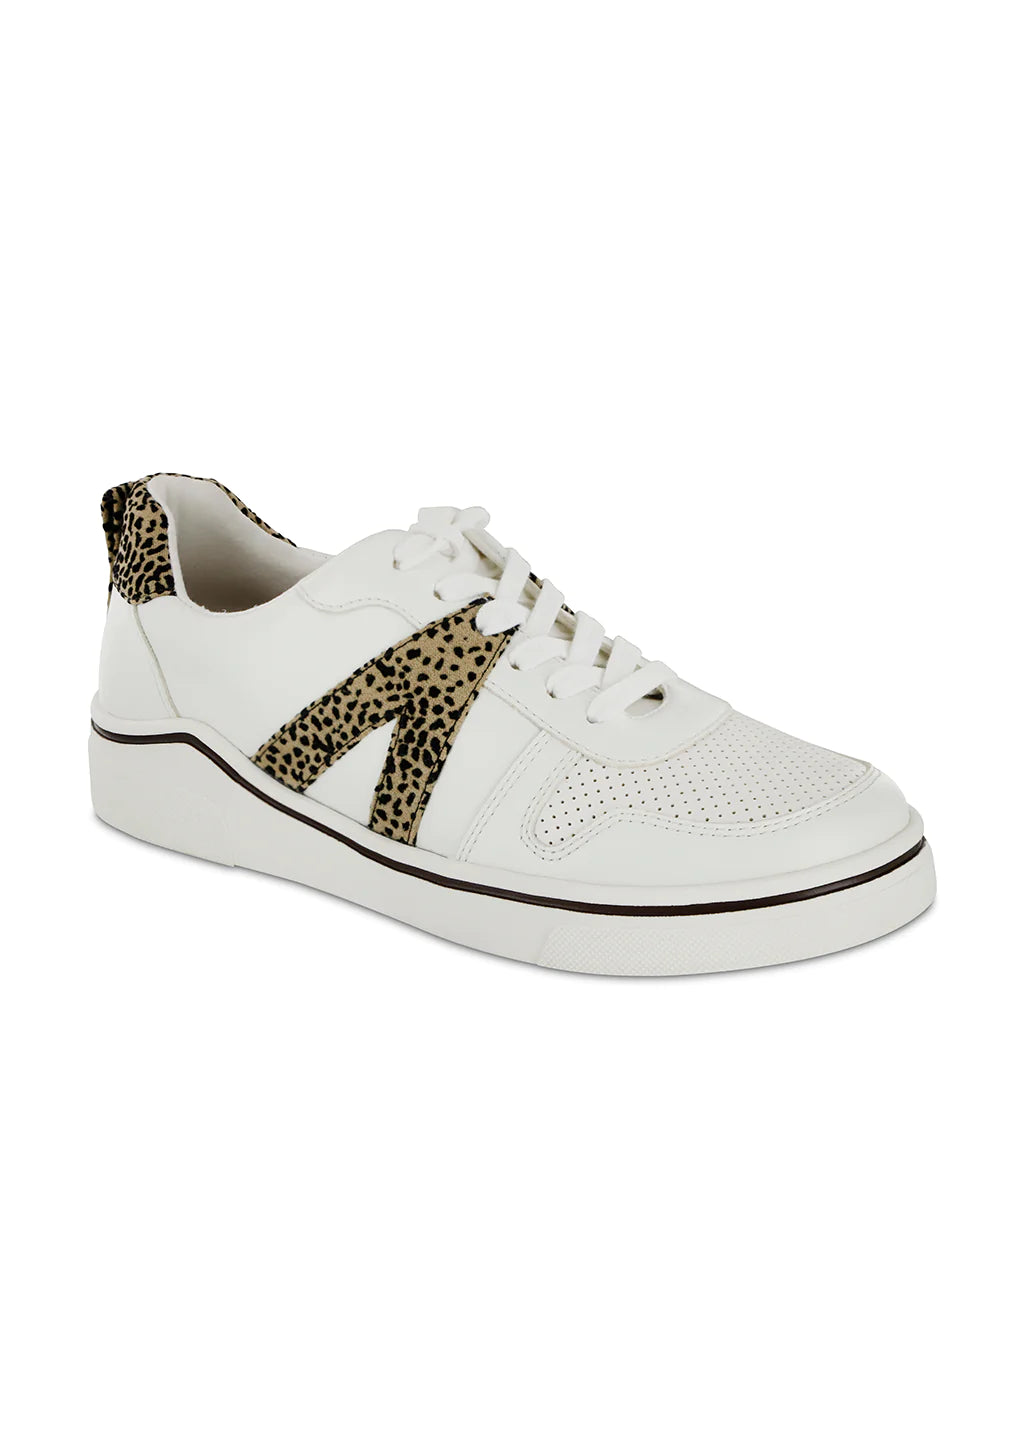 MIA Shoes | Alta - White Cheeta